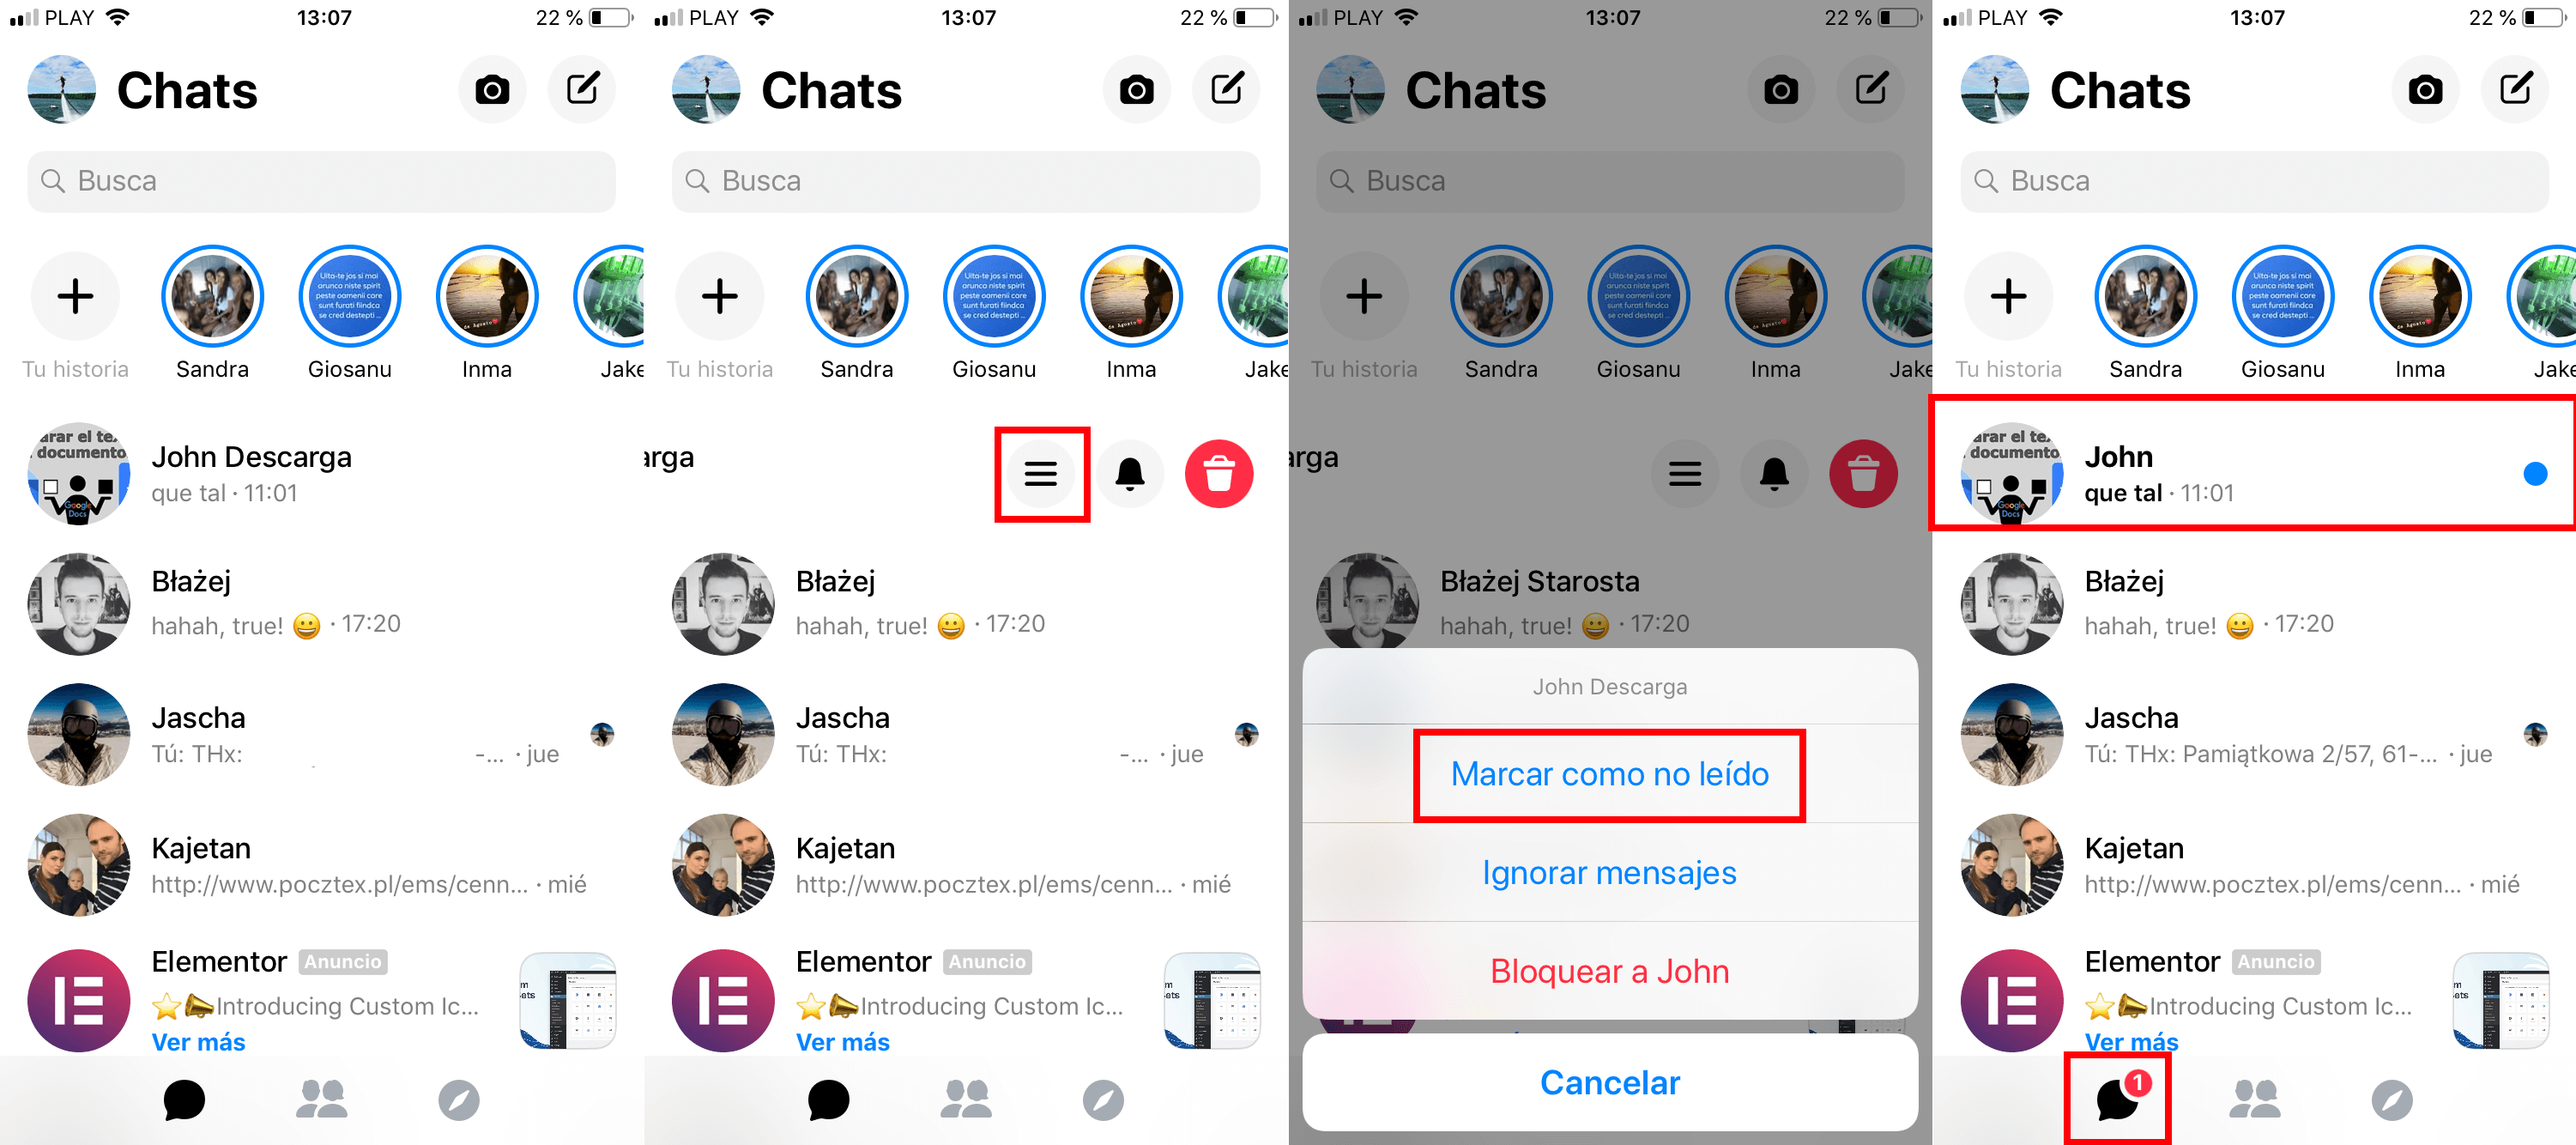 Facebook Messenger permite marcar chats y mensajes como No leido